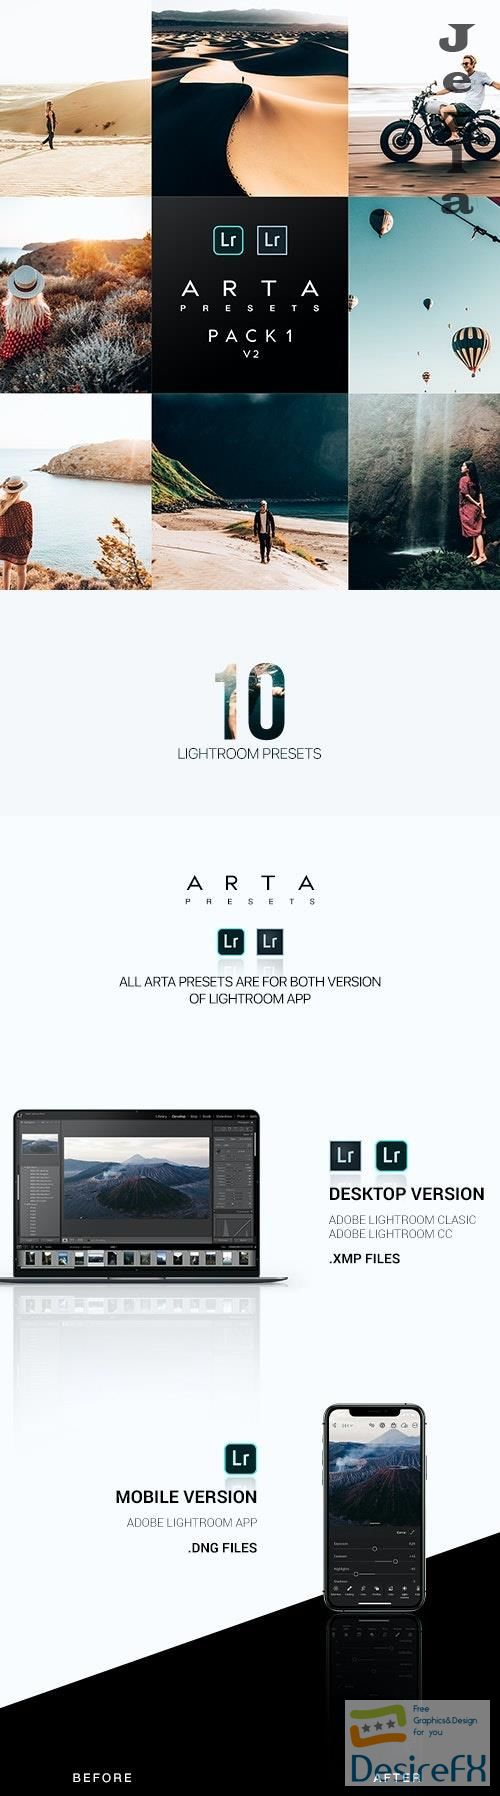 ARTA Preset Pack 1 v2 For Mobile and Desktop Lightroom 26532880